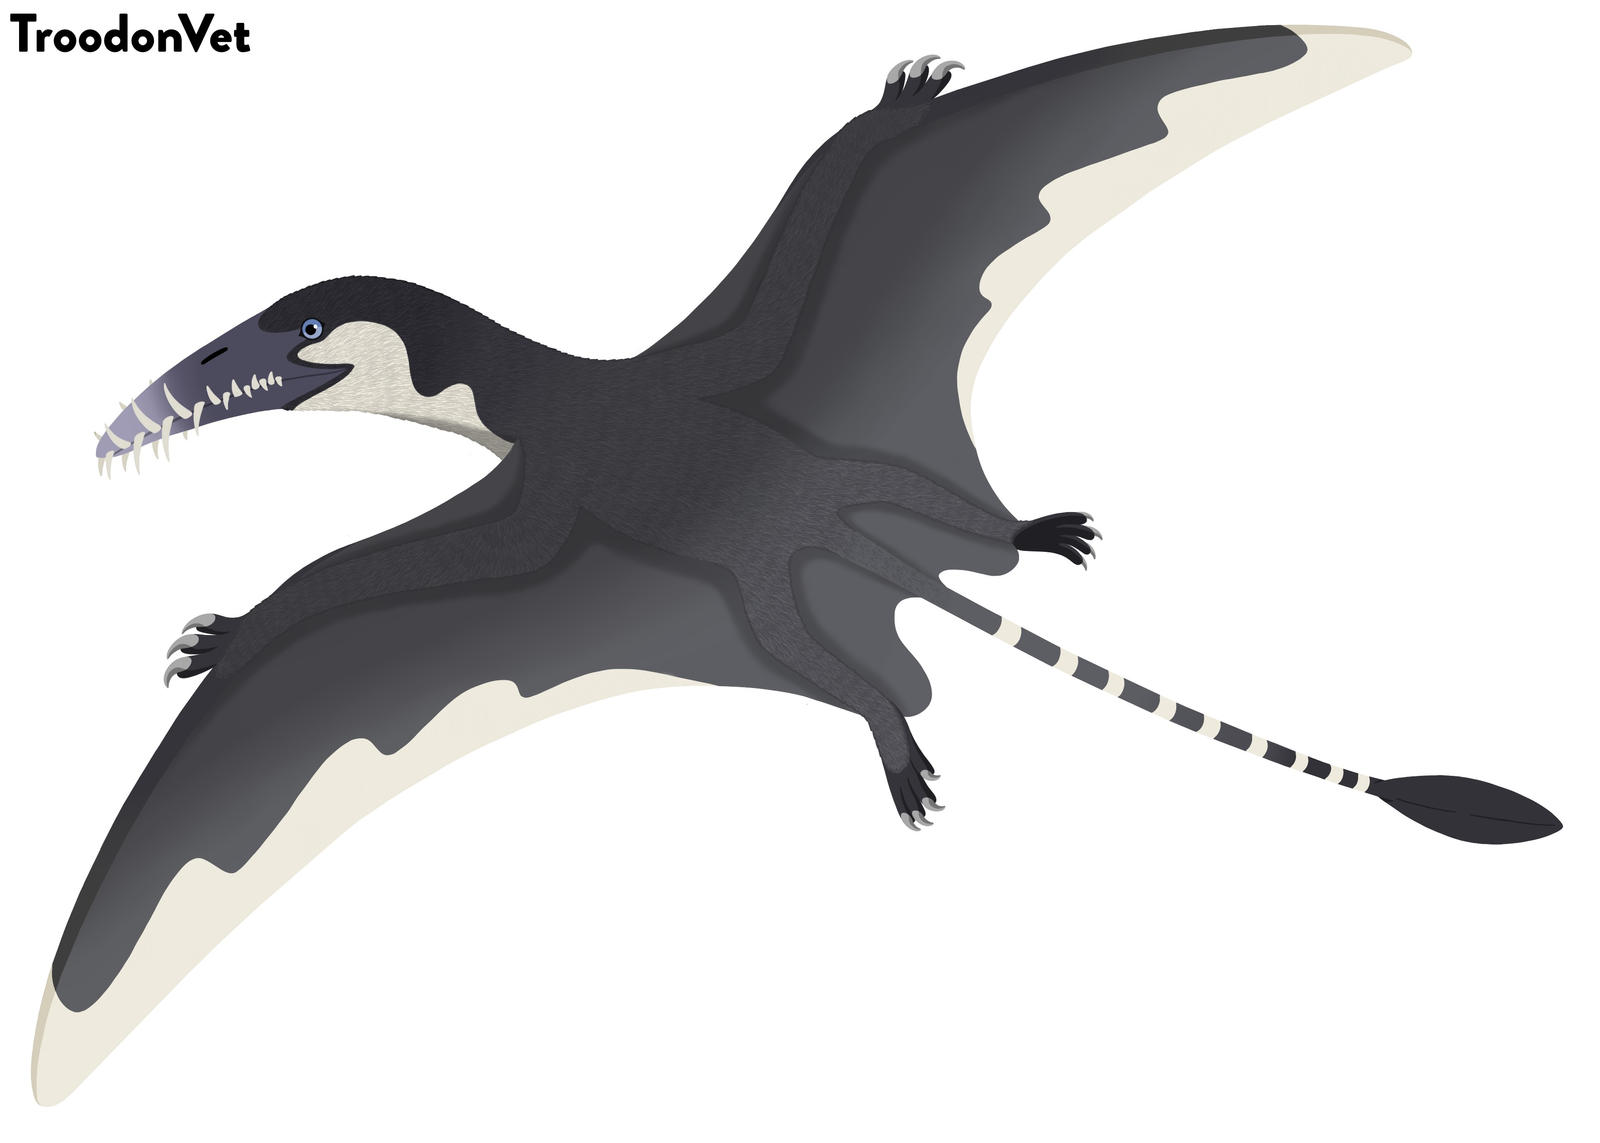 Vývoj velkých pterosaurů se posunul v čase